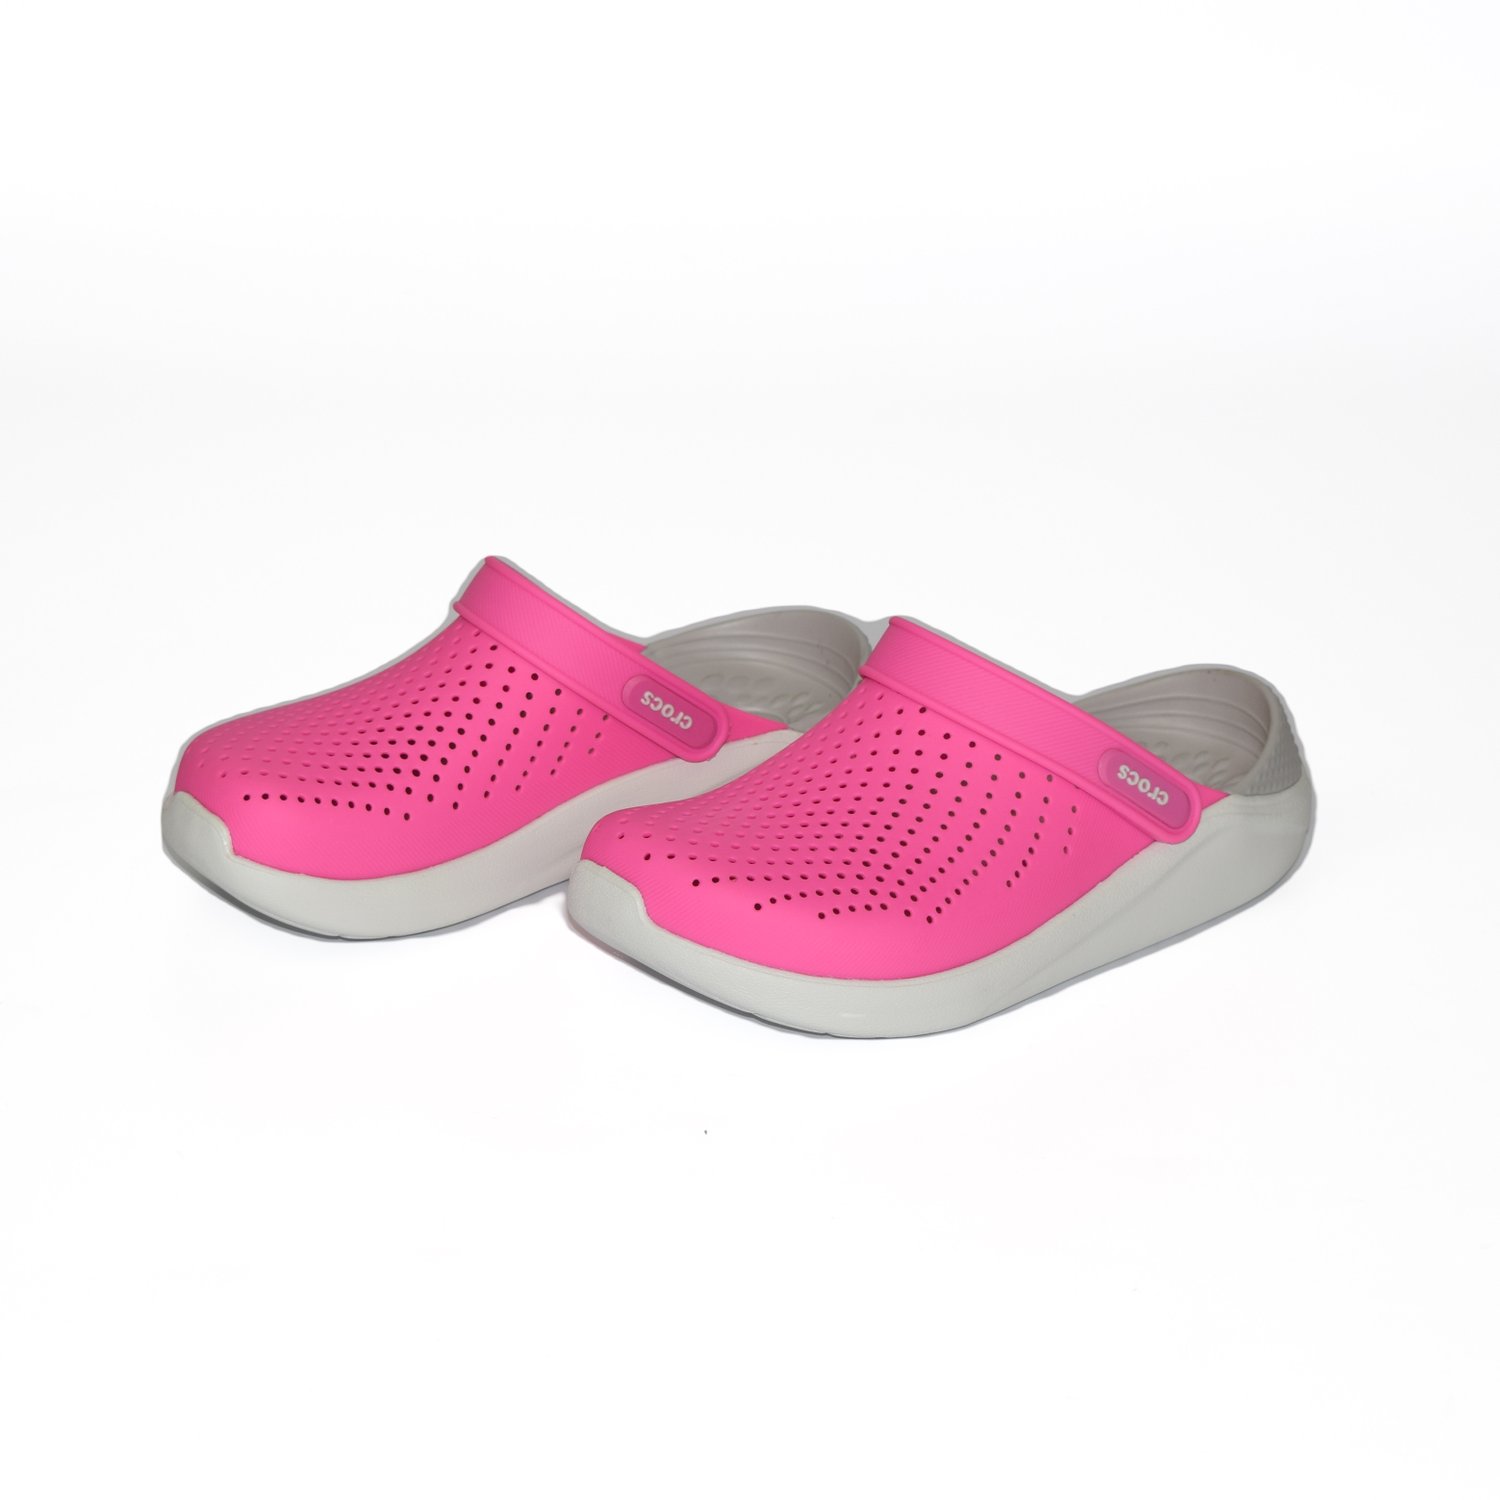 Crocs LiteRide Clog Rosa Pink - Propé Mix da Moda